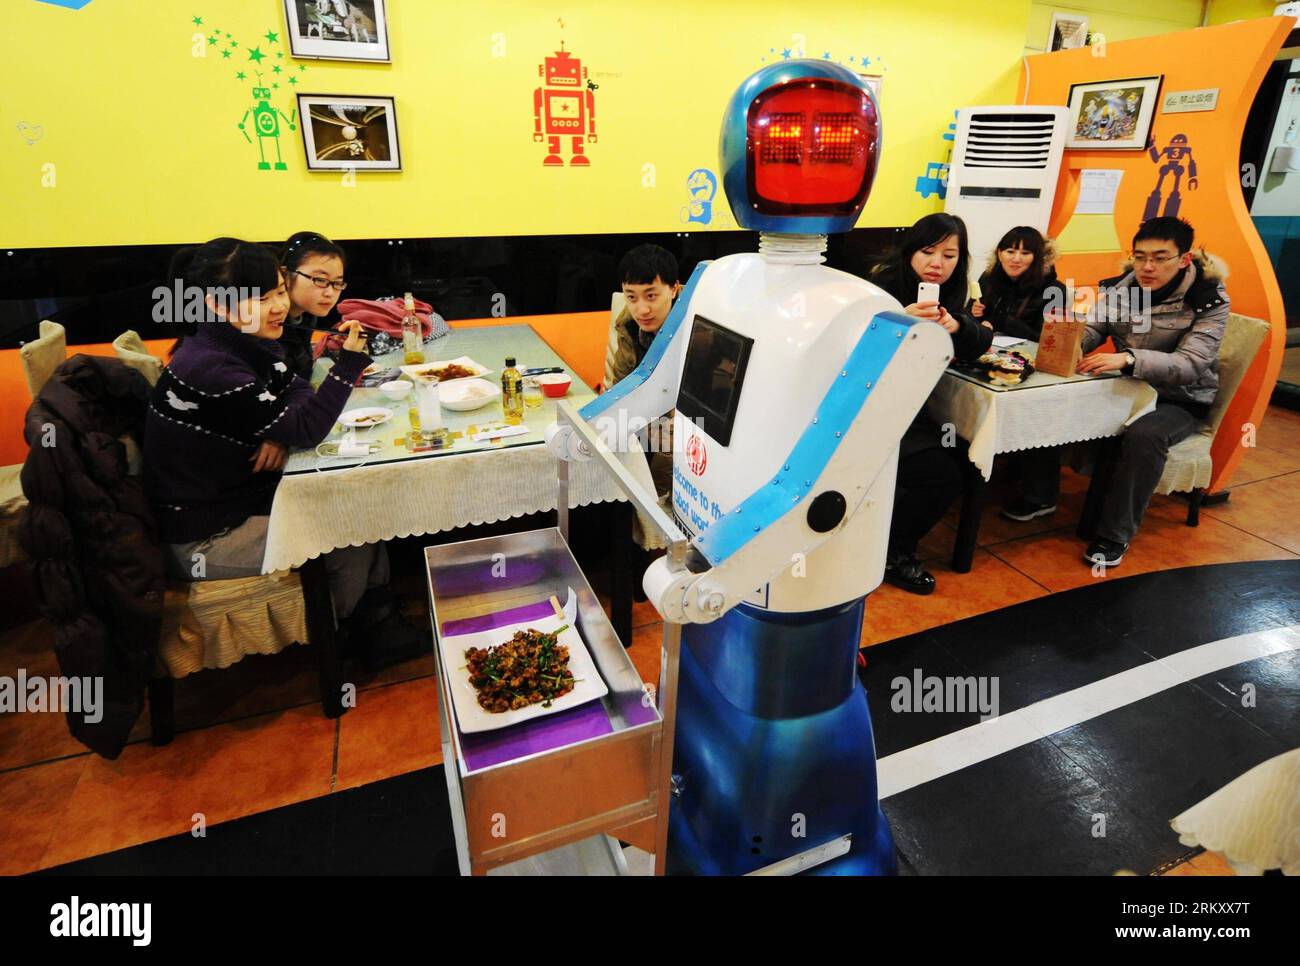 Bildnummer: 59103149 Datum: 18.01.2013 Copyright: imago/Xinhua (130118) -- HARBIN, 18 gennaio 2013 (Xinhua) -- Un robot serve piatti in un ristorante a tema robot a Harbin, capitale della provincia di Heilongjiang della Cina nord-orientale, 18 gennaio 2013. Aperto nel giugno del 2012, il ristorante ha guadagnato fama utilizzando un totale di 20 robot per cucinare i pasti, consegnare i piatti e salutare i clienti. (Xinhua/Wang Jianwei) (zc) RISTORANTE A TEMA CHINA-HEILONGJIANG-HARBIN-ROBOT (CN) PUBLICATIONxNOTxINxCHN Gesellschaft Gastronomie Erlebnisgastronomie kurios Komik Roboter Kellner Fotostory x0x xds 2013 quer premiumd 591 Foto Stock